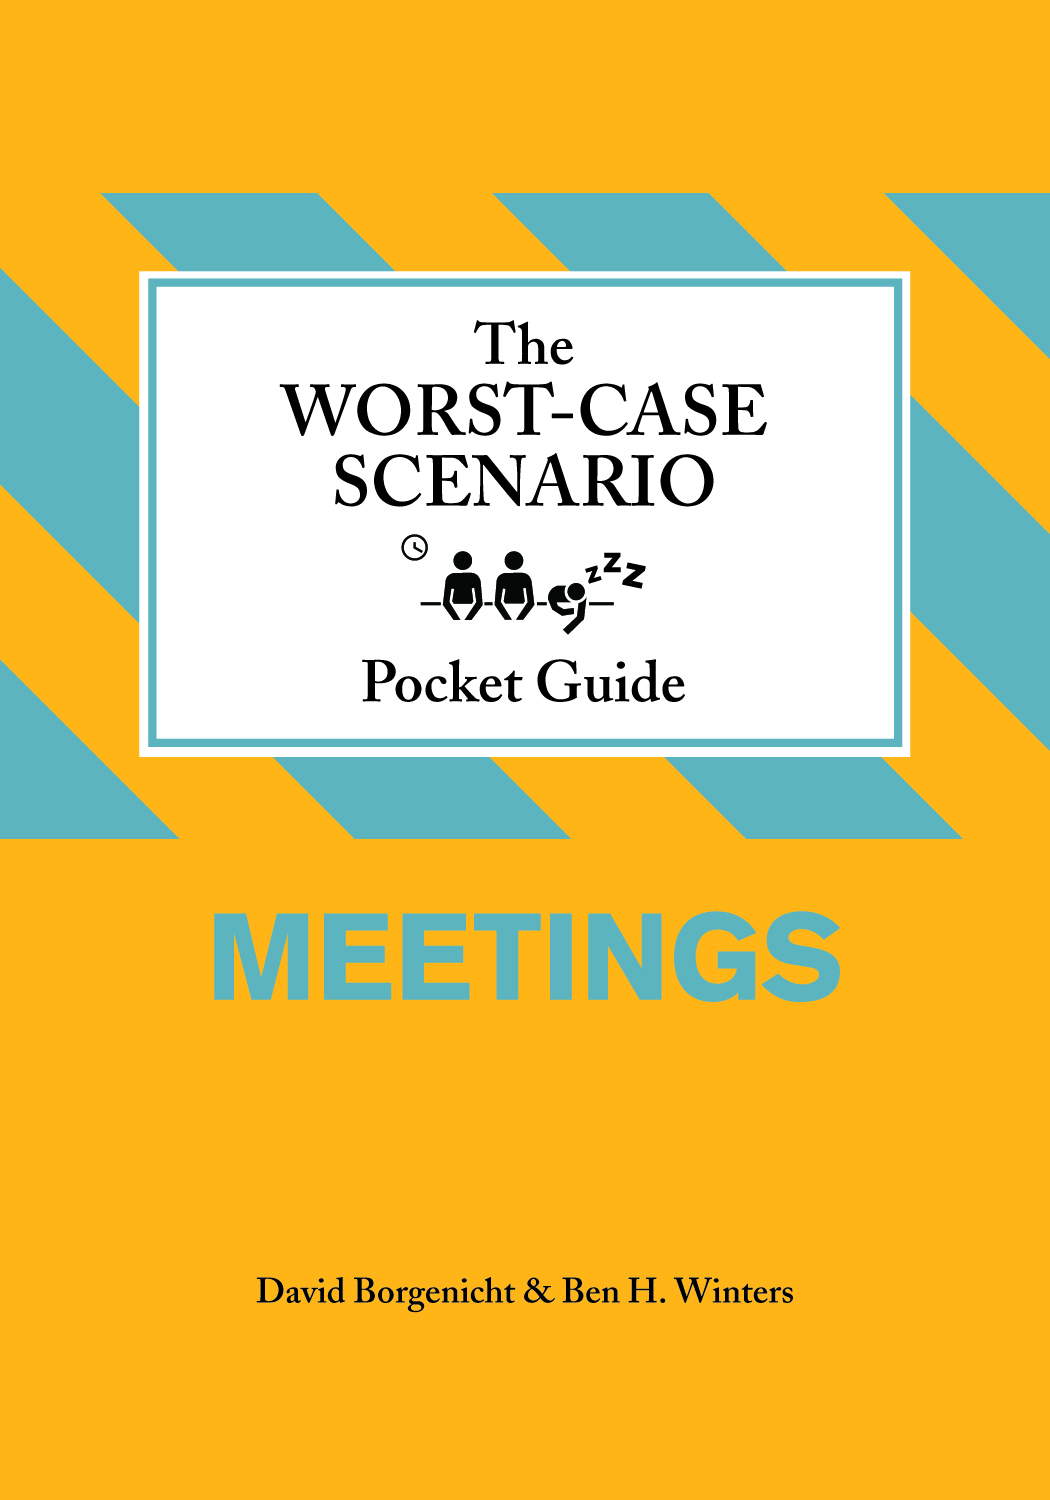 wcspg_meetings_cover.jpg